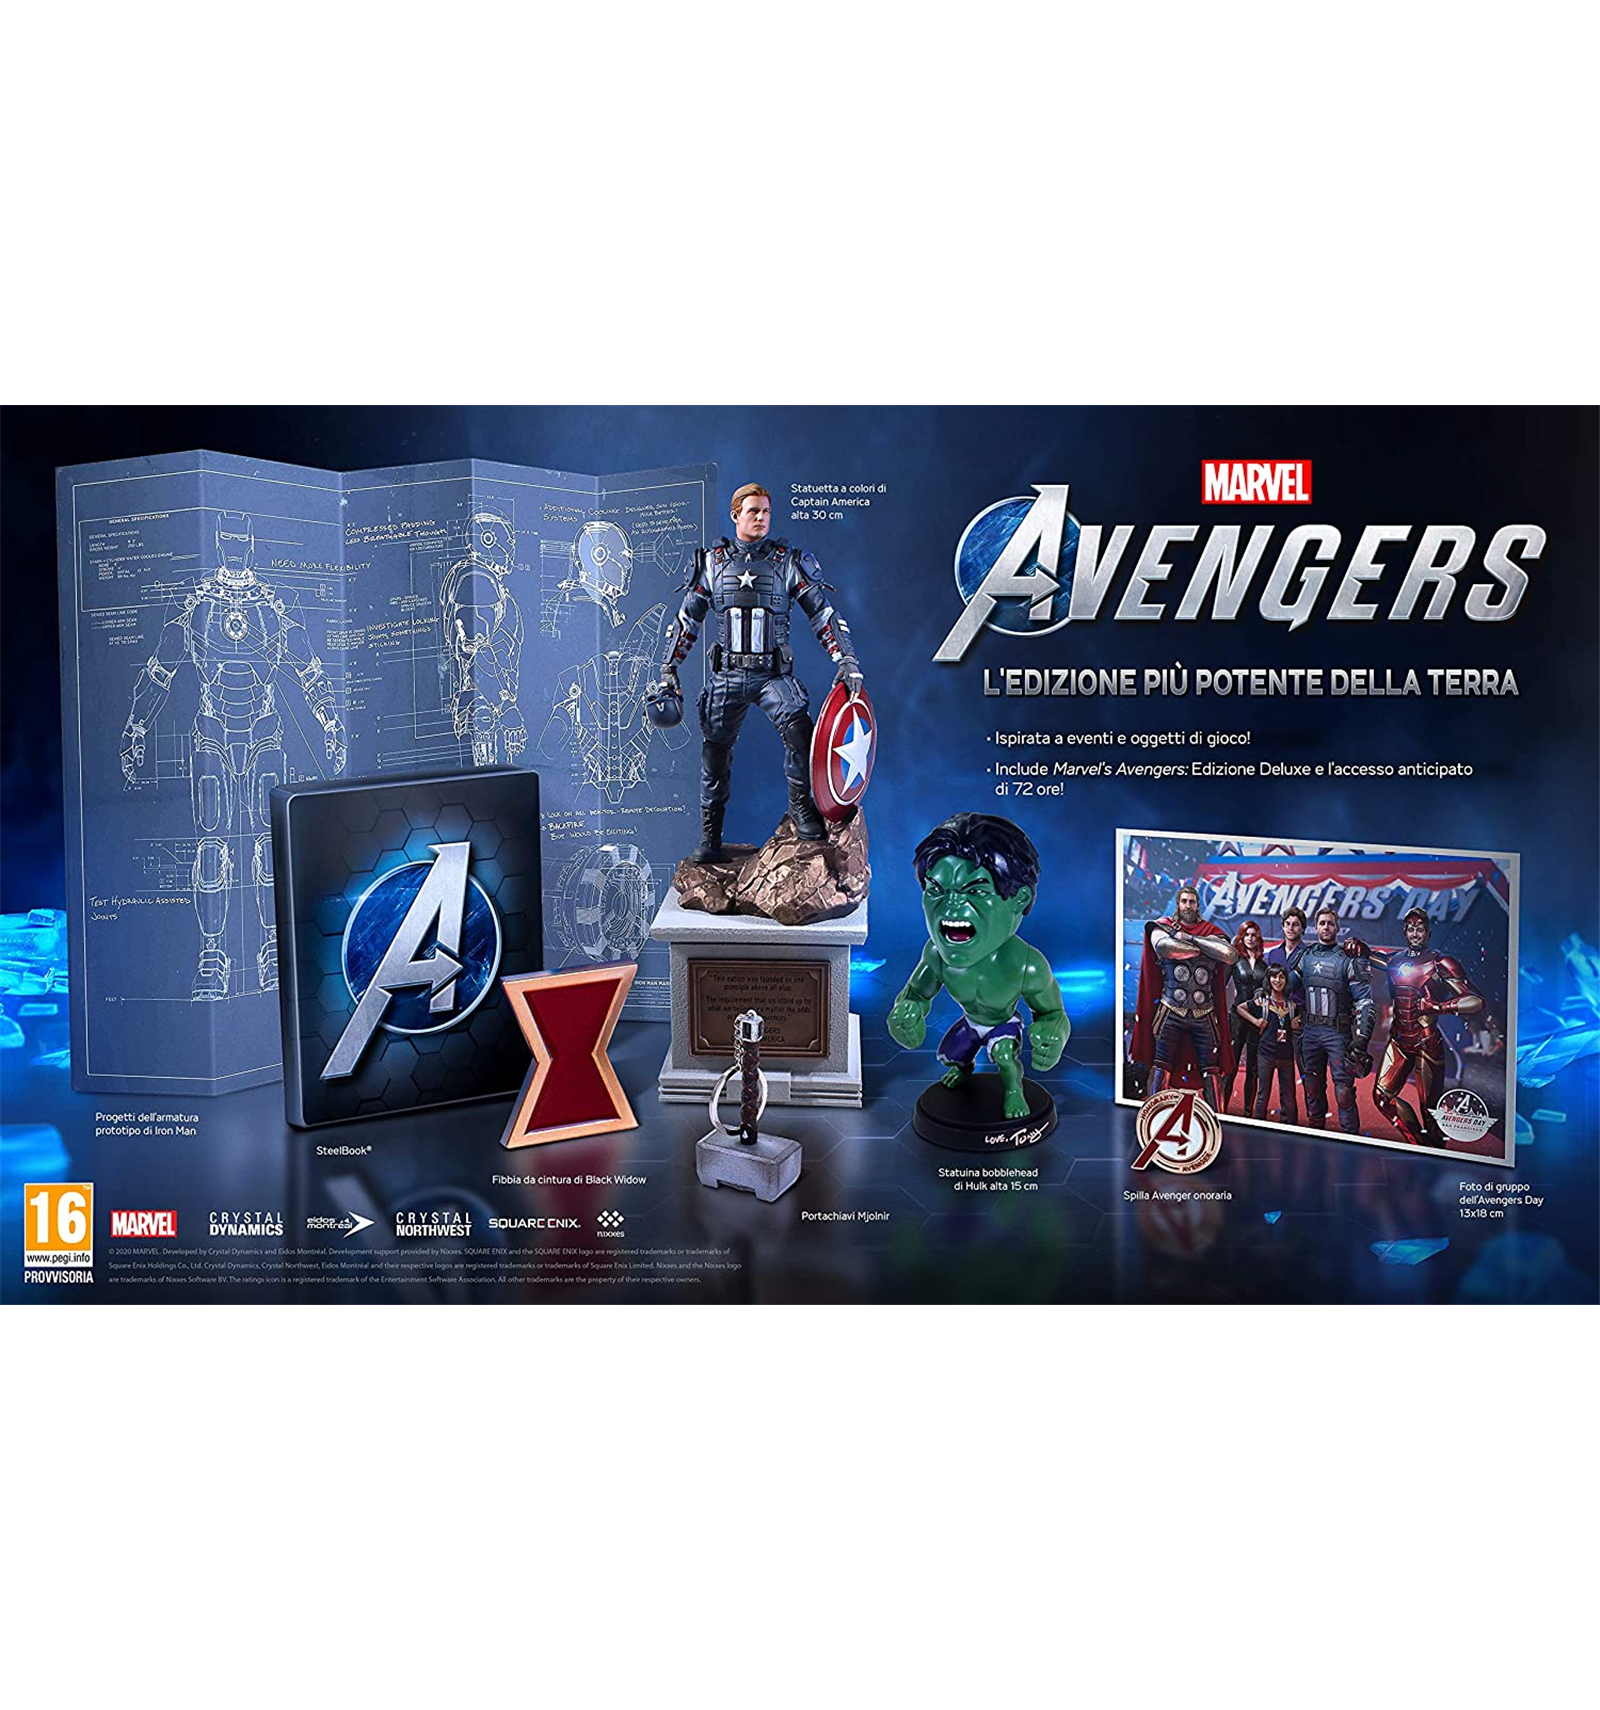 PS4 Marvel's Avengers - Collector's Edition - L'edizione più potente della  Terra - DaxStore S.R.L.S.